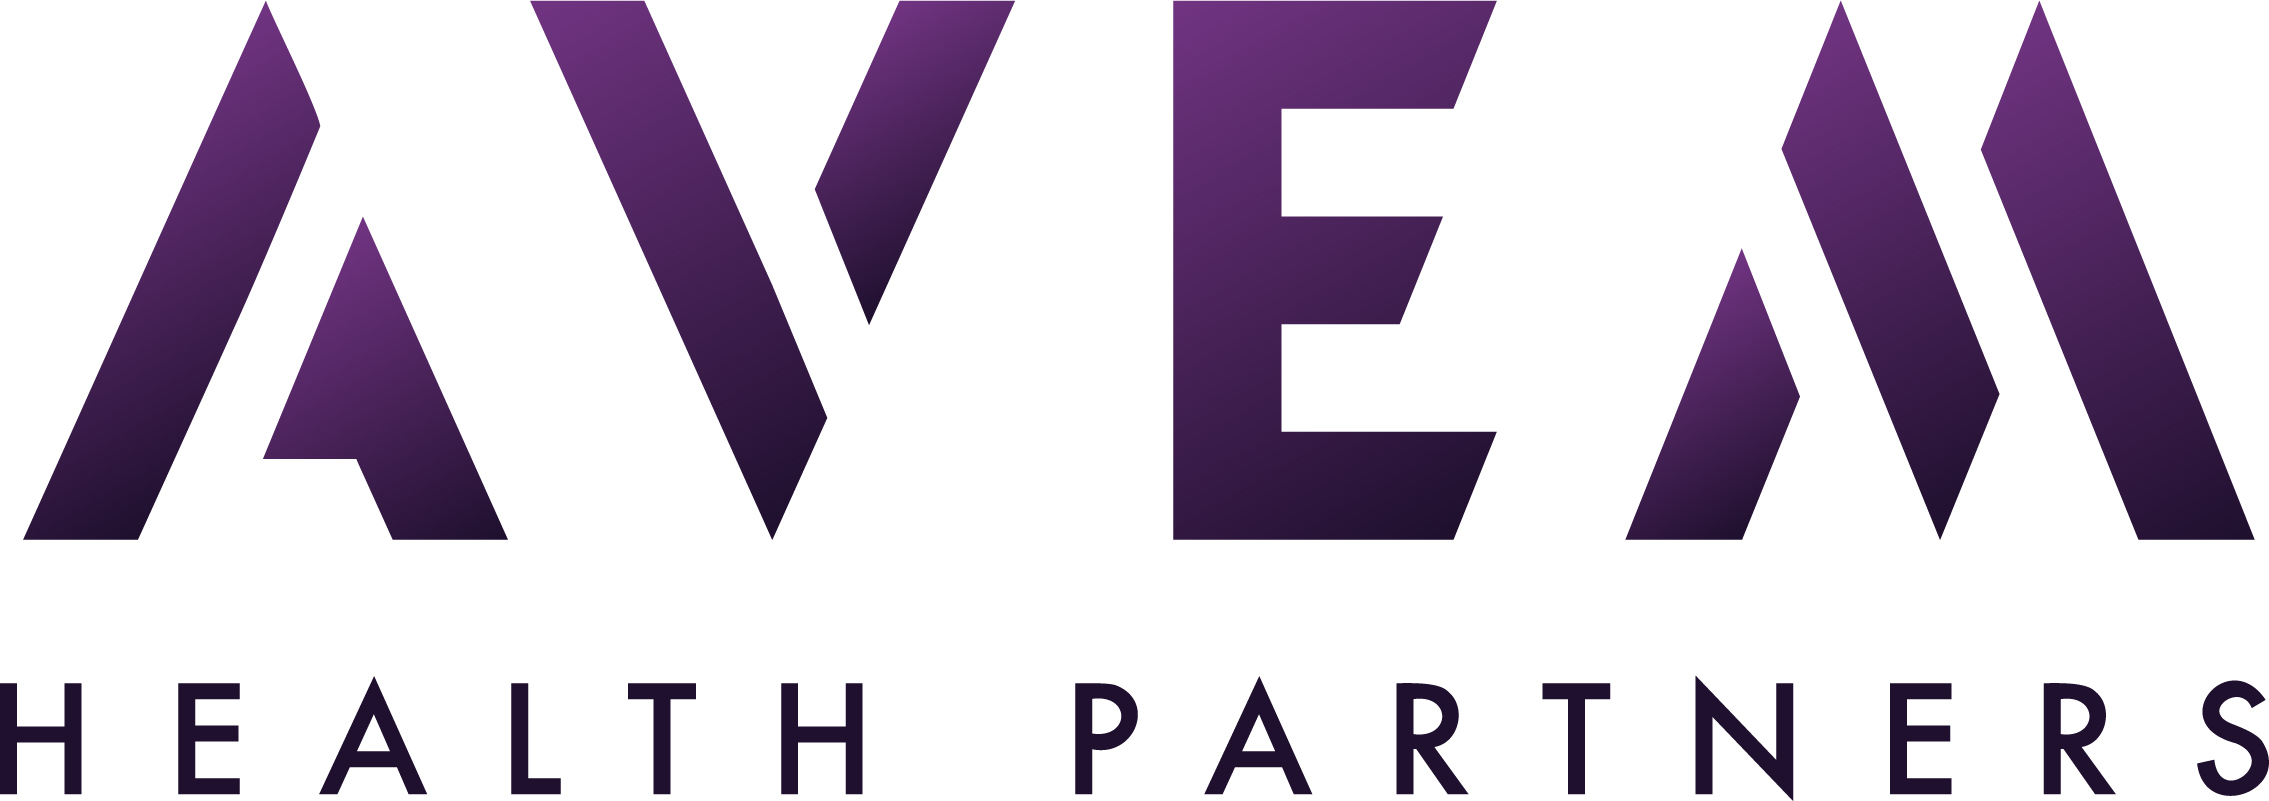 Avem Health Partners Company Logo